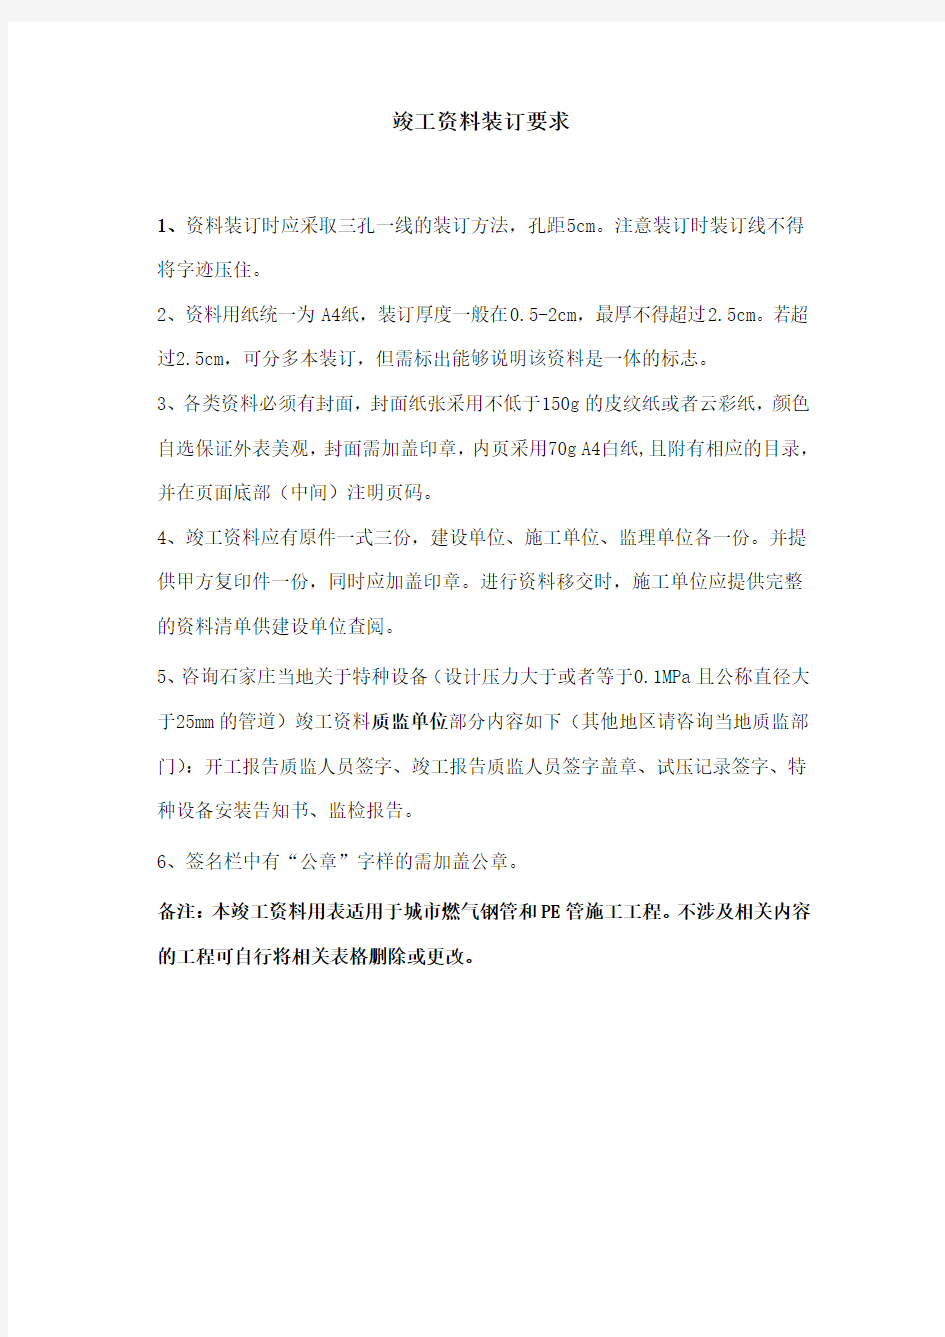 河北省天然气有限责任公司城镇燃气工程竣工资料用表0711(1)